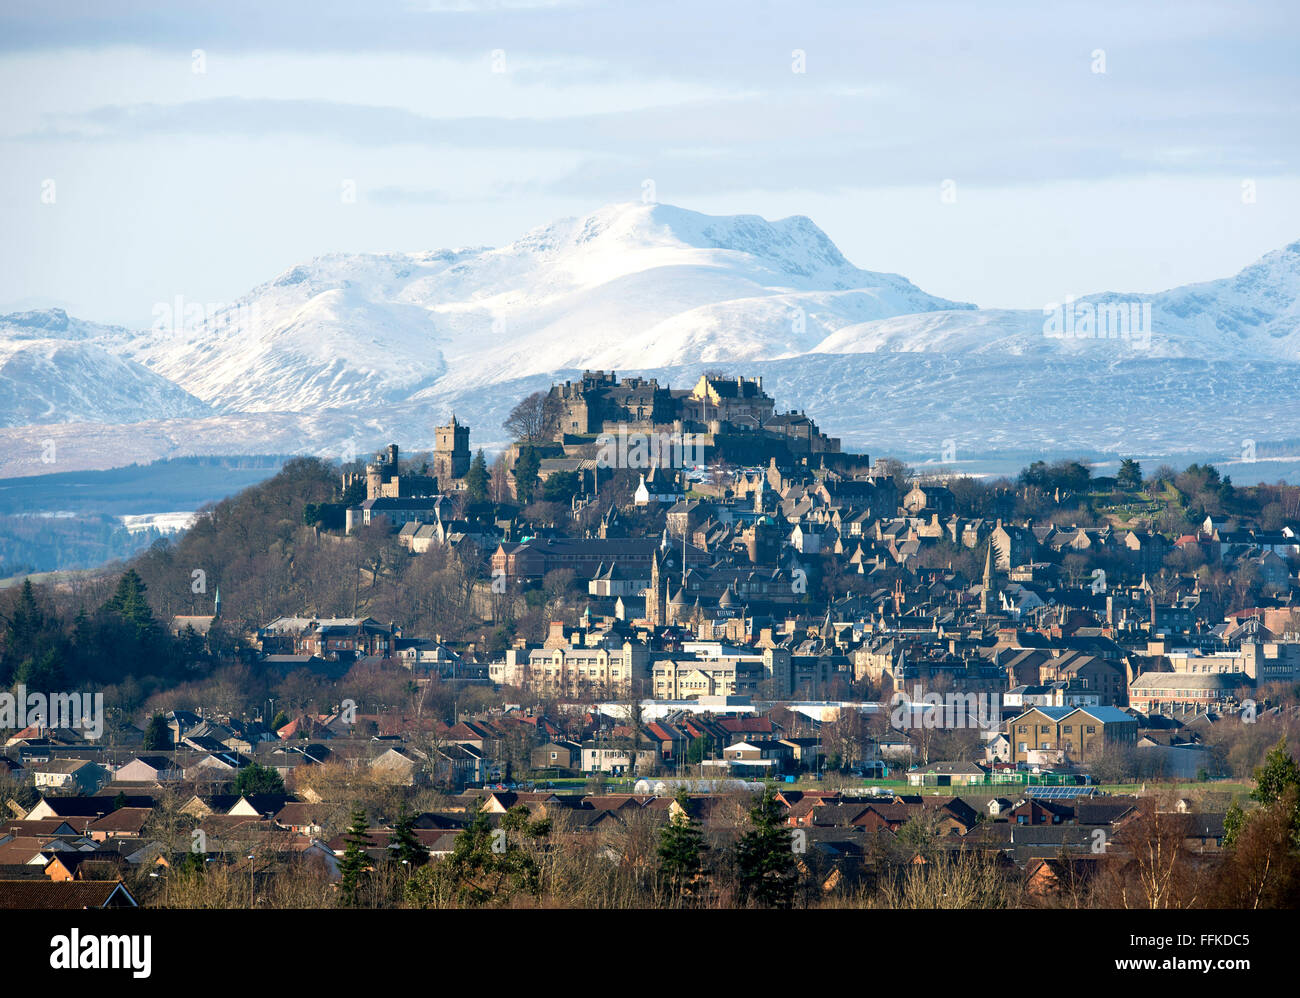 15 février 2016. Le Château de Stirling et ville de Stirling, Écosse avec la montagne couverte de neige (Stuc a Chroin ) à distance. Banque D'Images